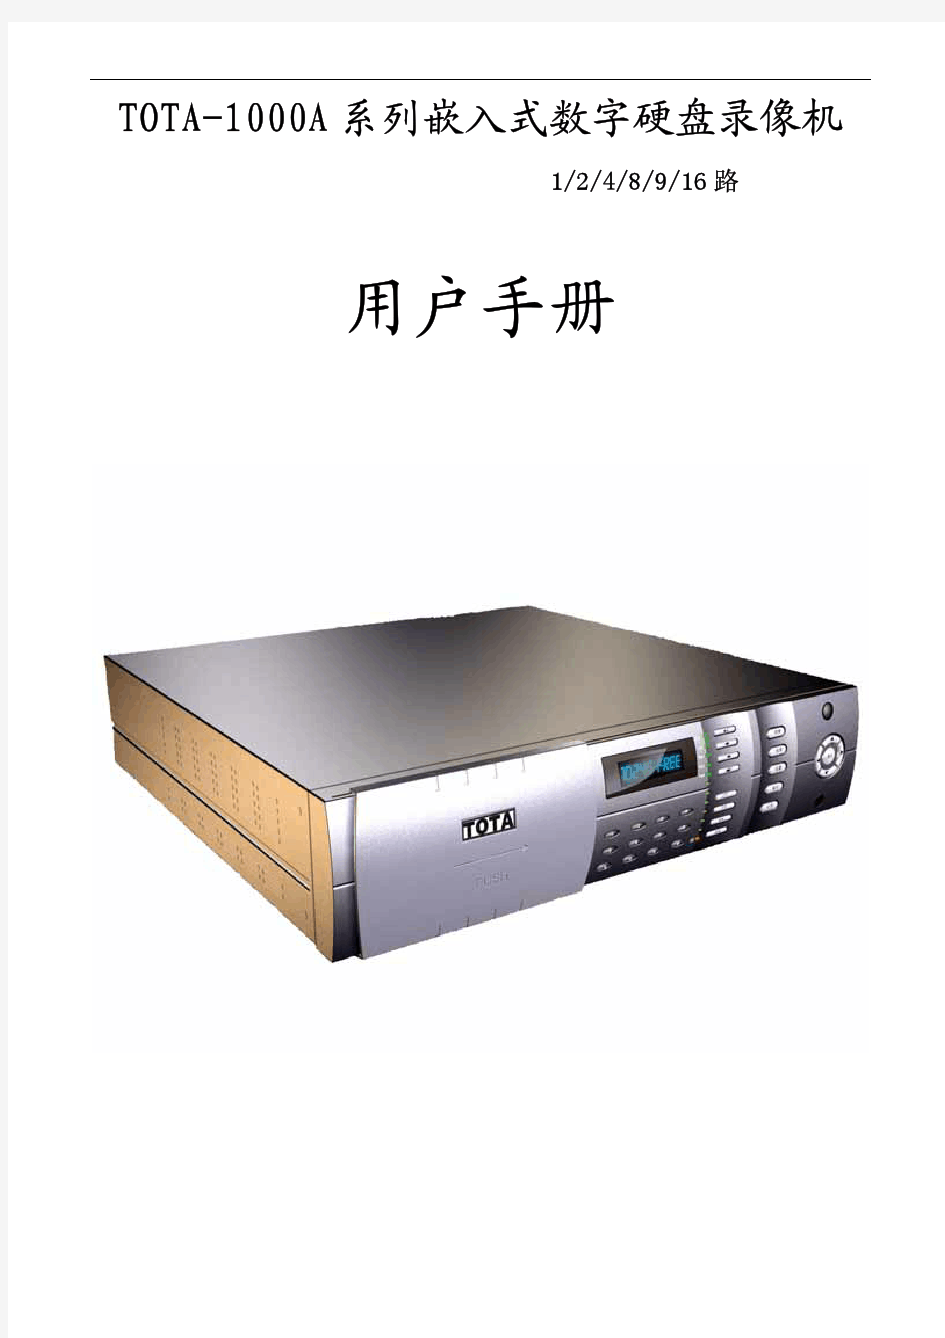 TOTA-1000A系列嵌入式数字硬盘录像机